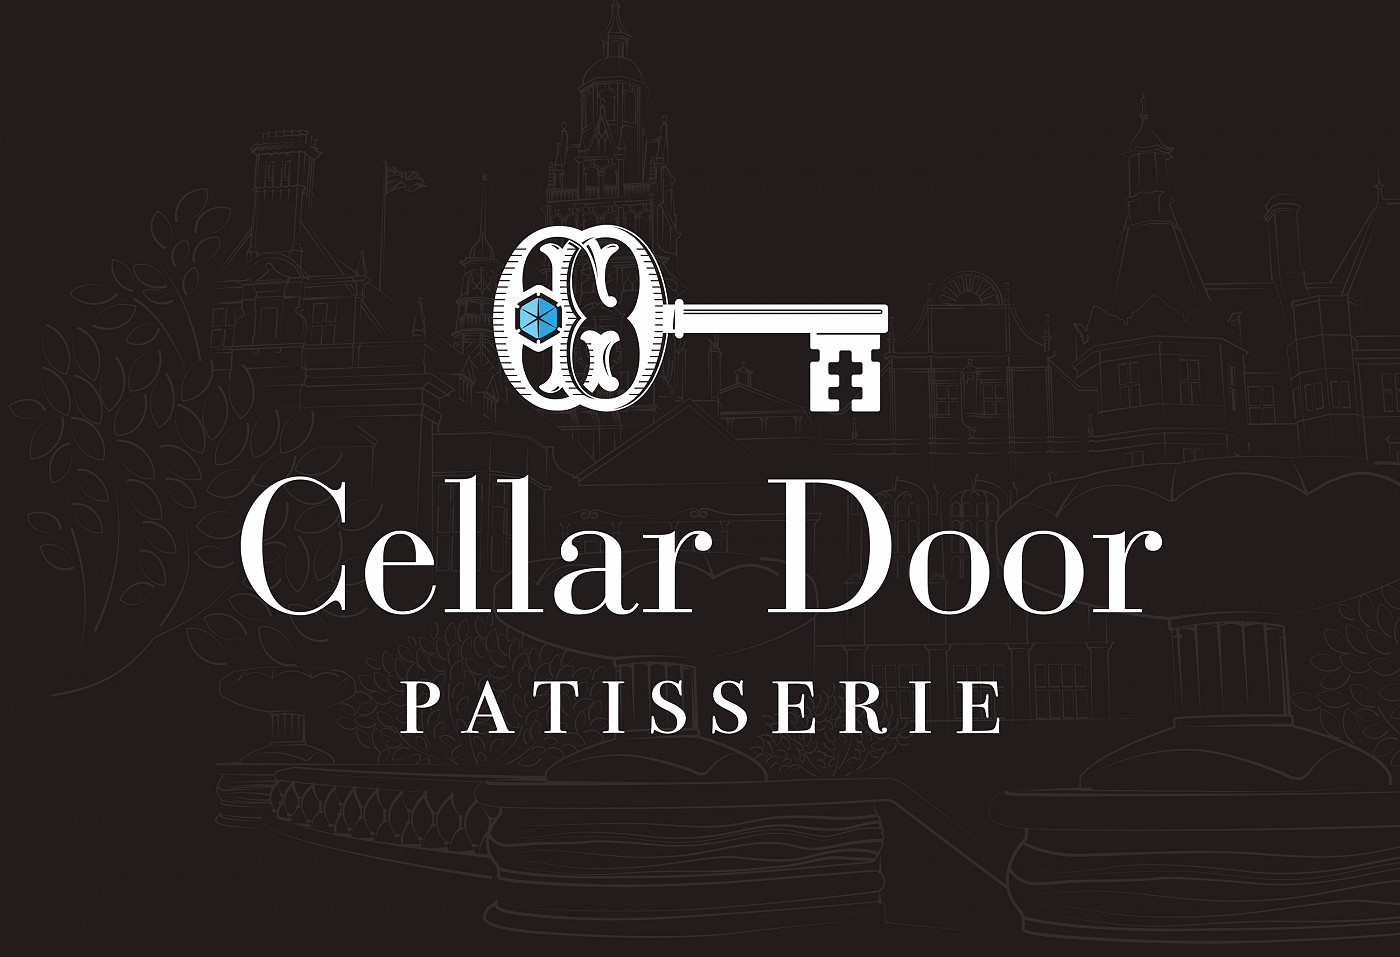 Cellar Door Patisserie